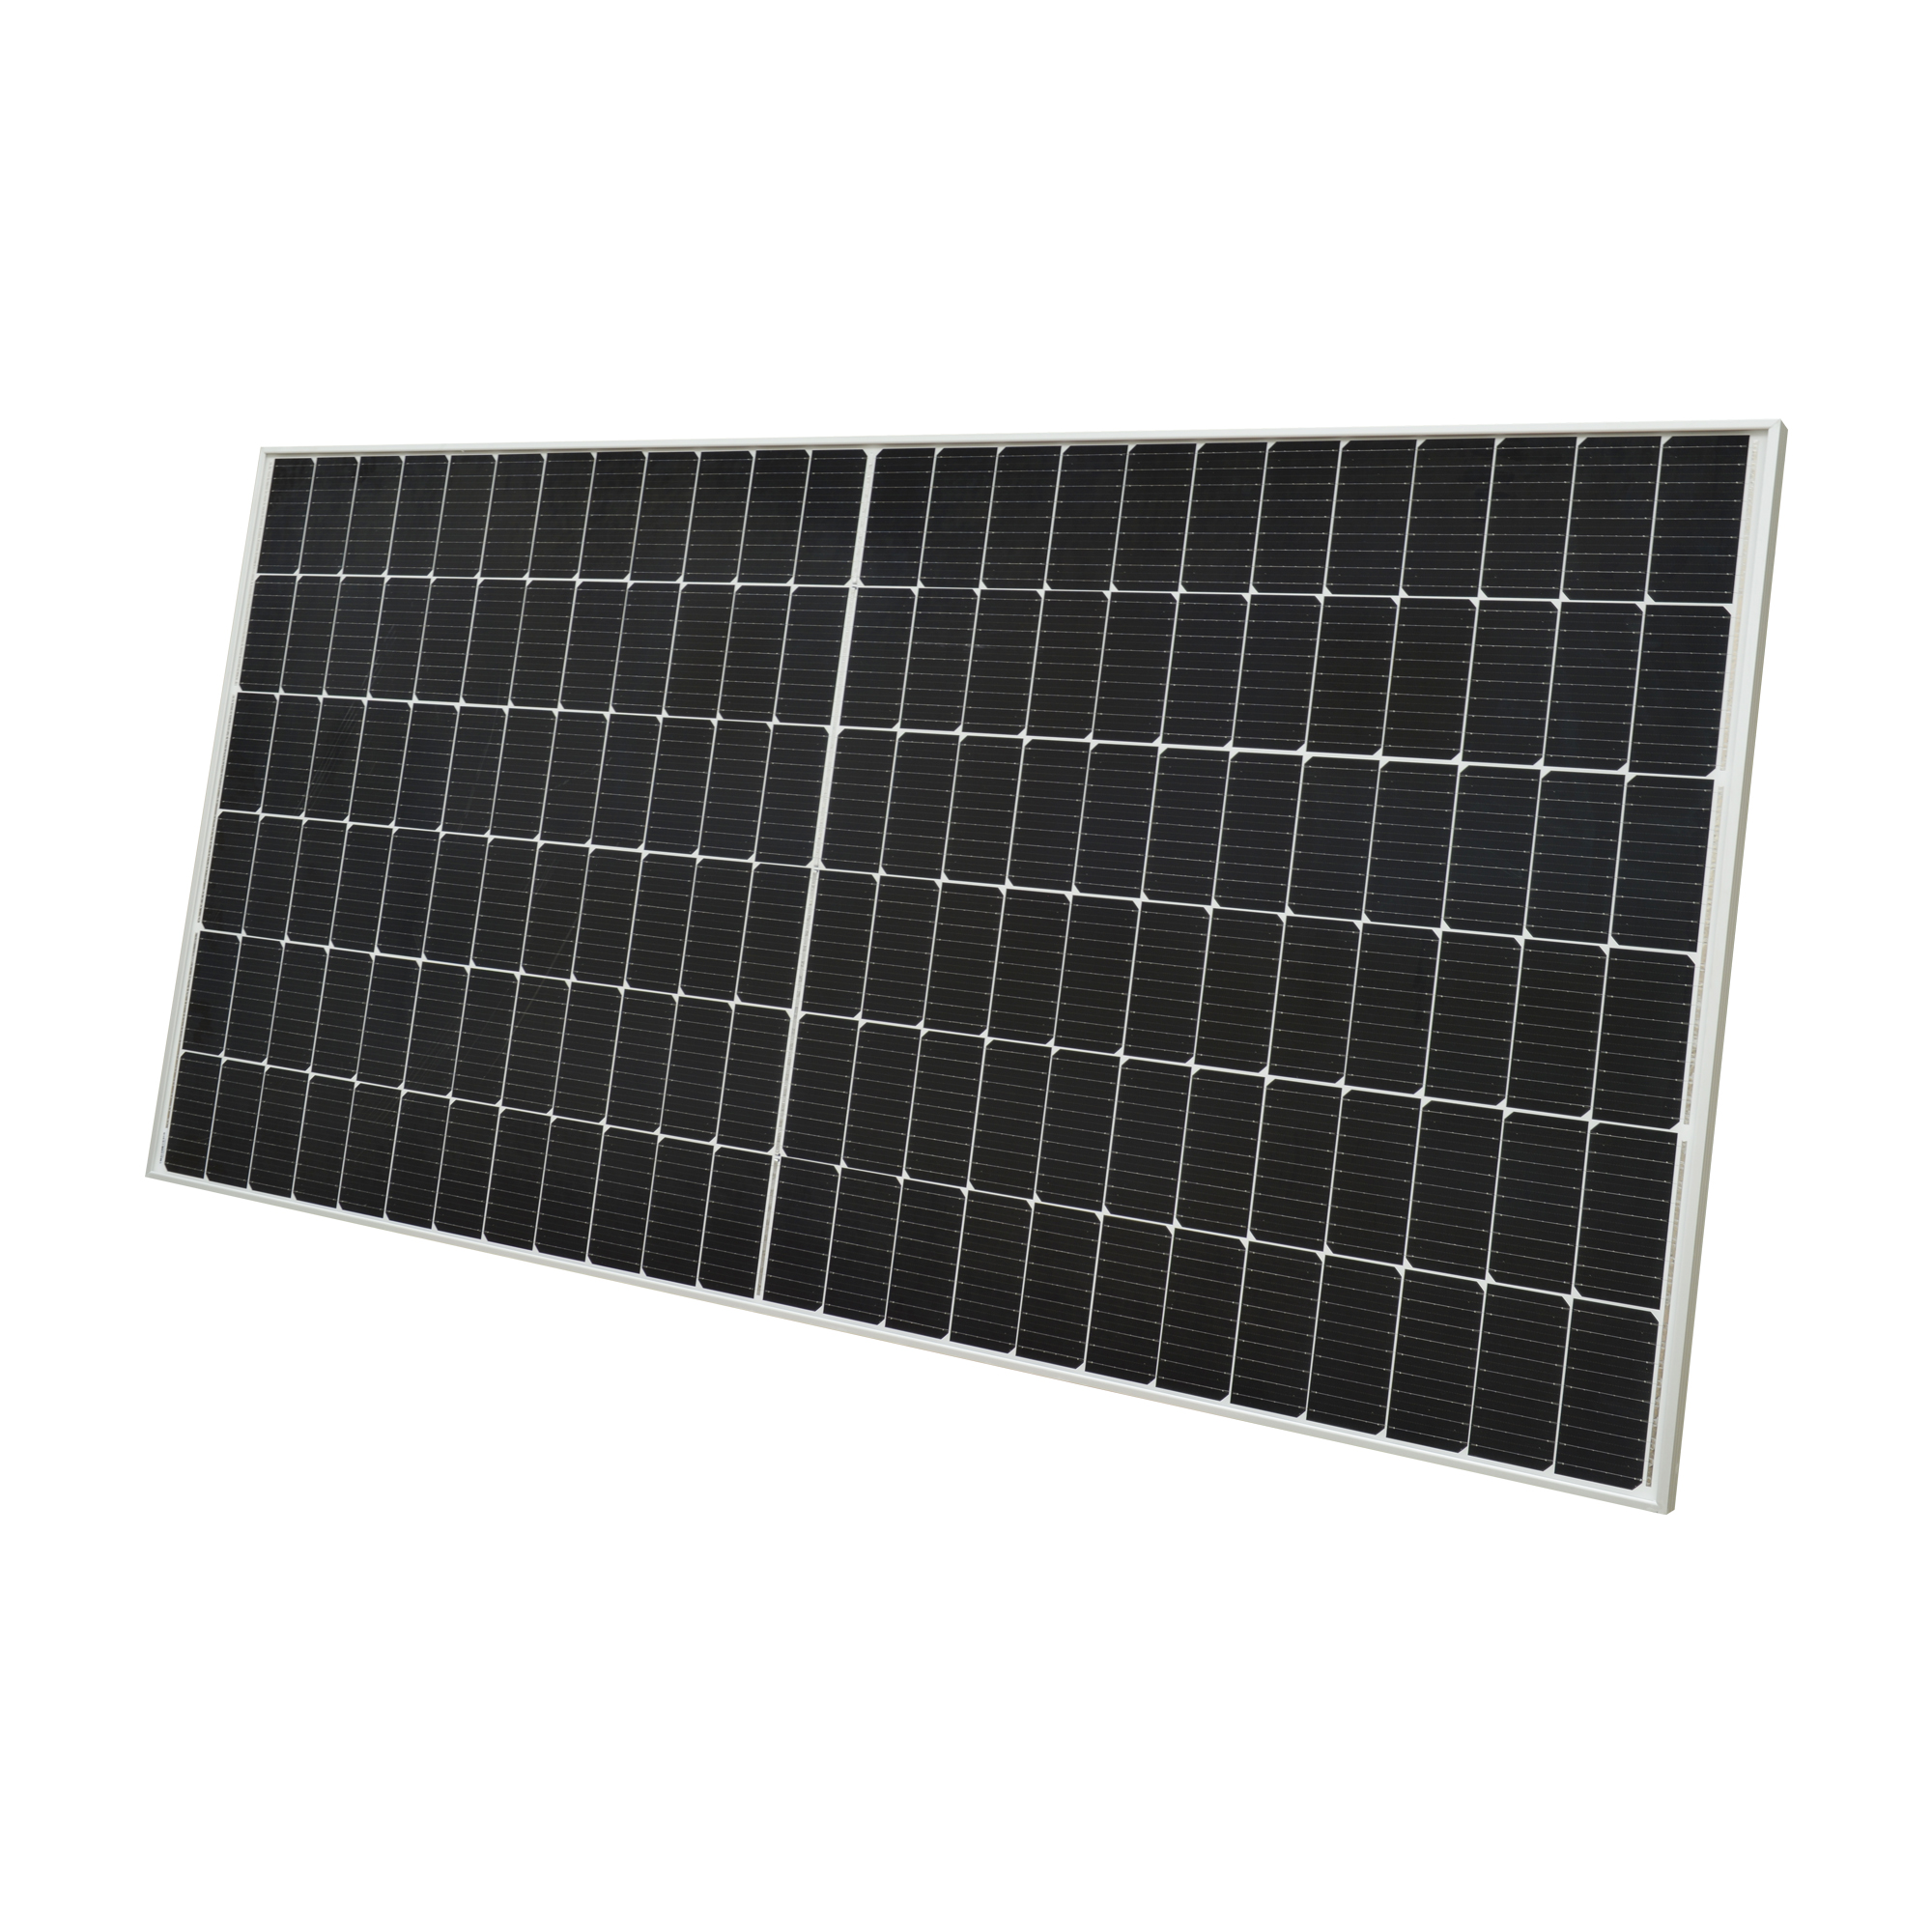 панель солнечной системы монокристалла 450В вне решетки для панели солнечной энергии дома фотоэлектрической 